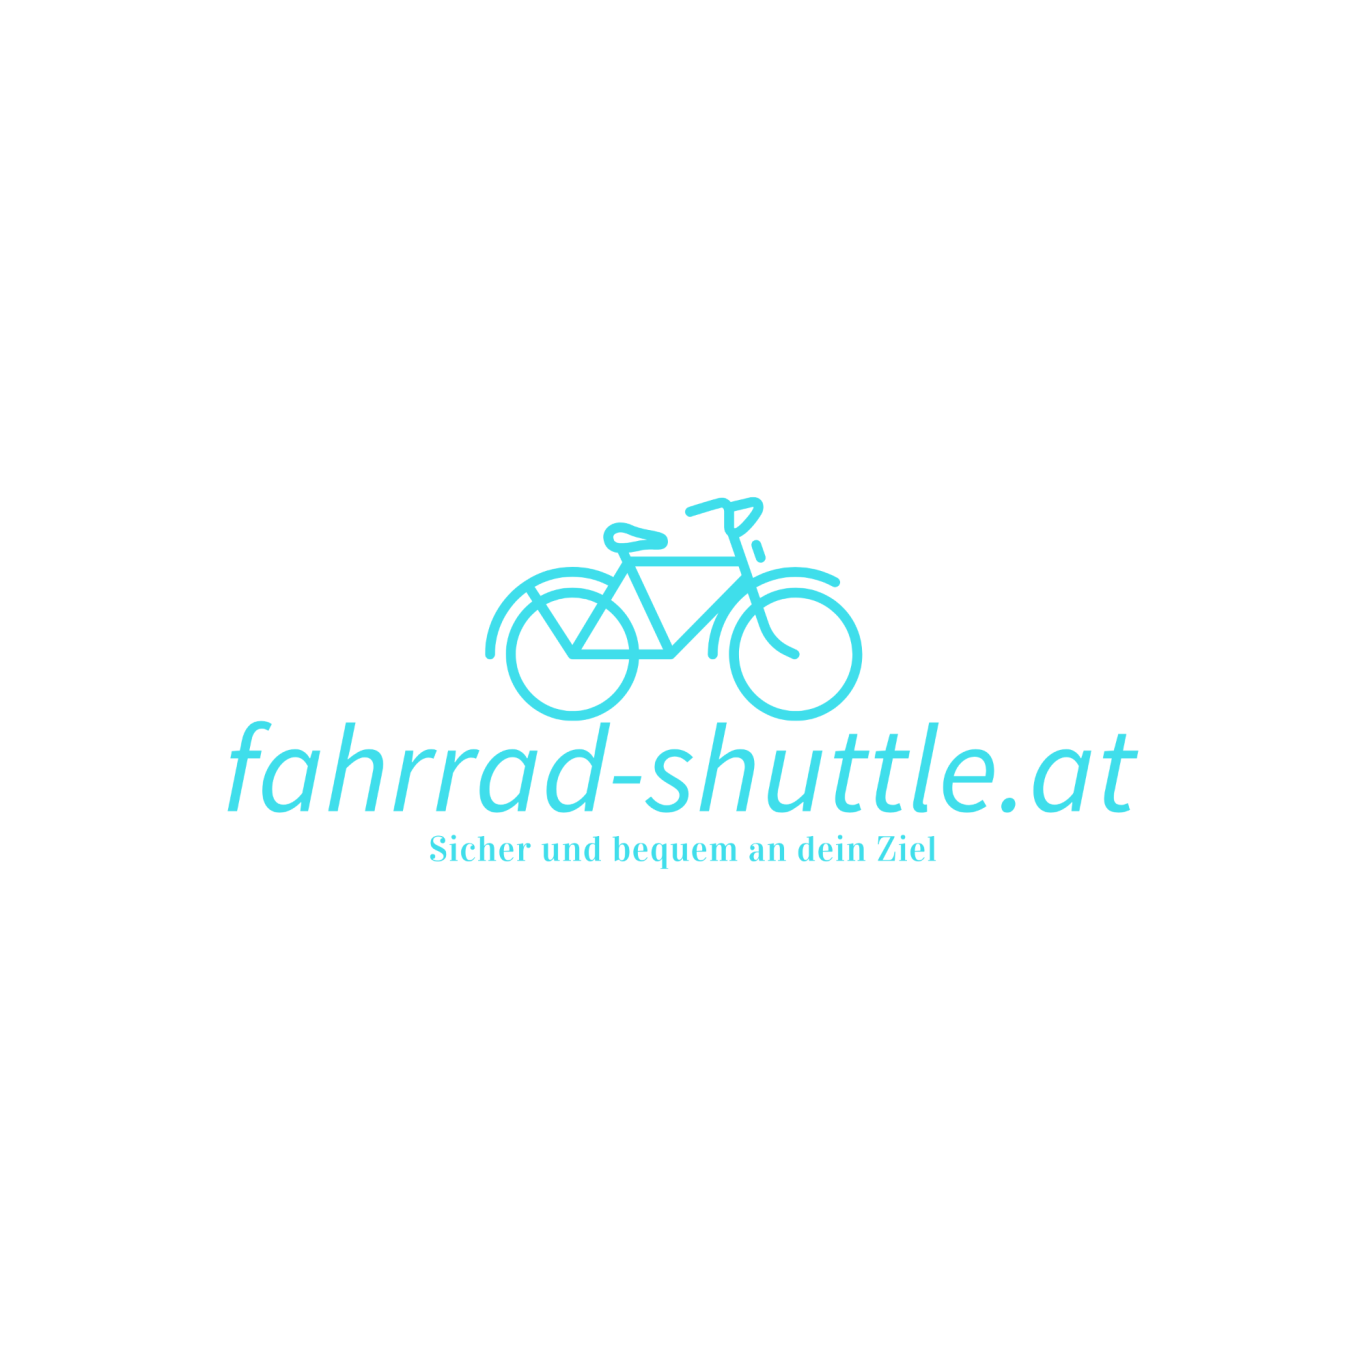 www.fahrrad-shuttle.at